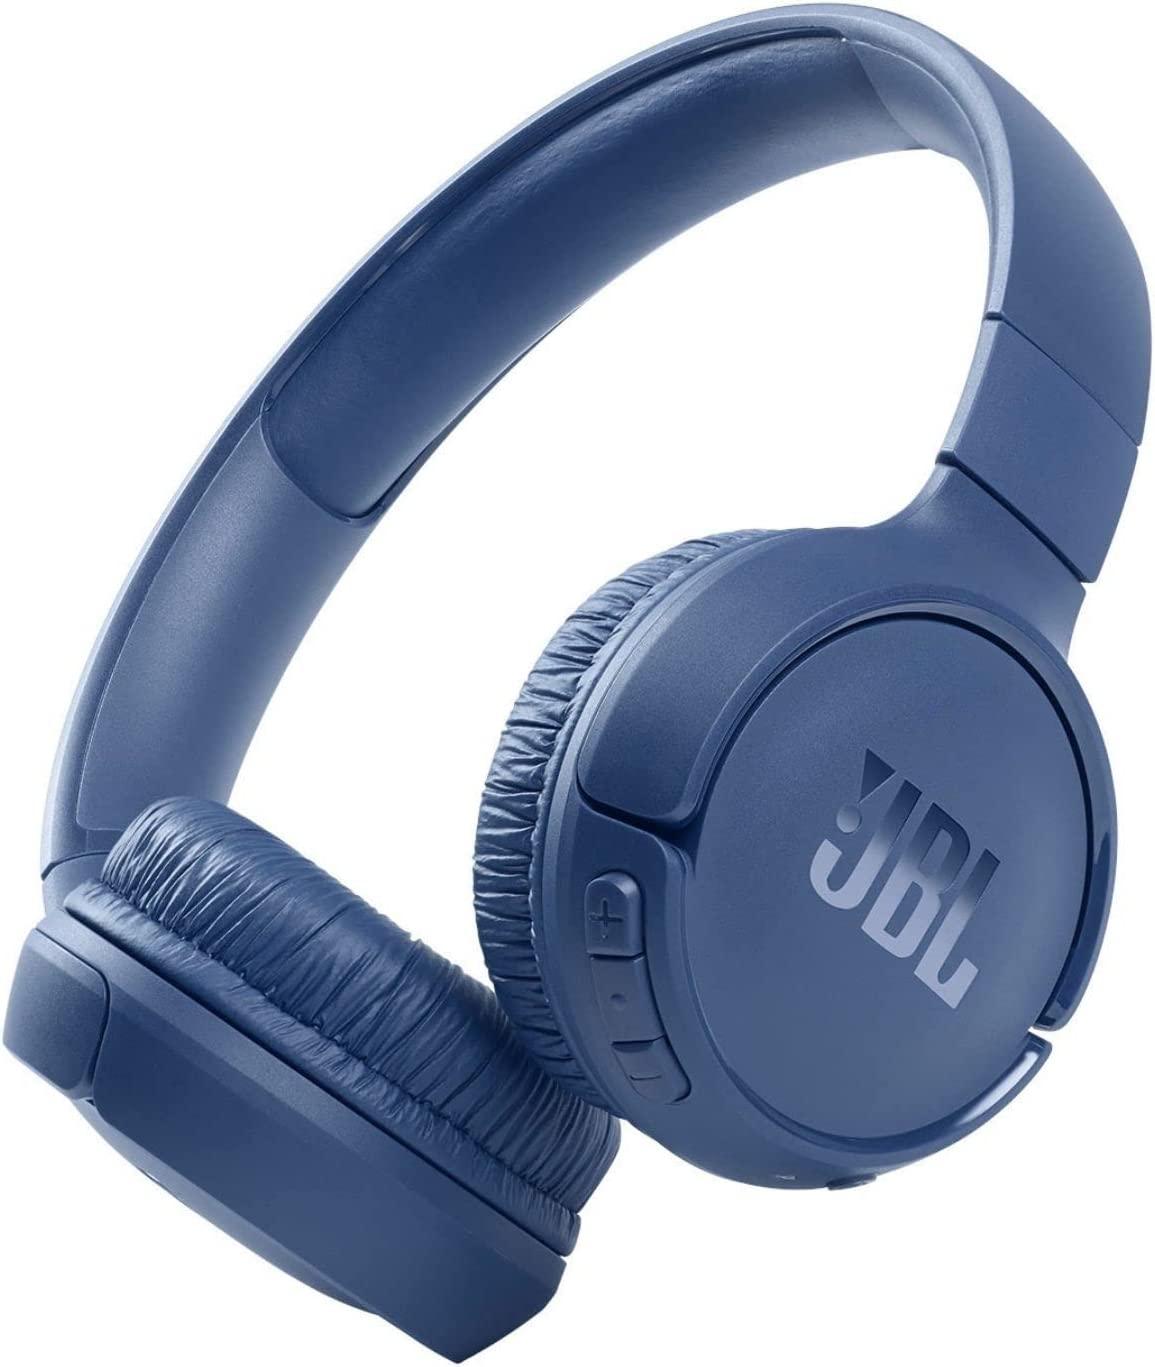 JBL Tune 510BT - Wireless On-Ear Headphones - GameStore.mt | Powered by Flutisat